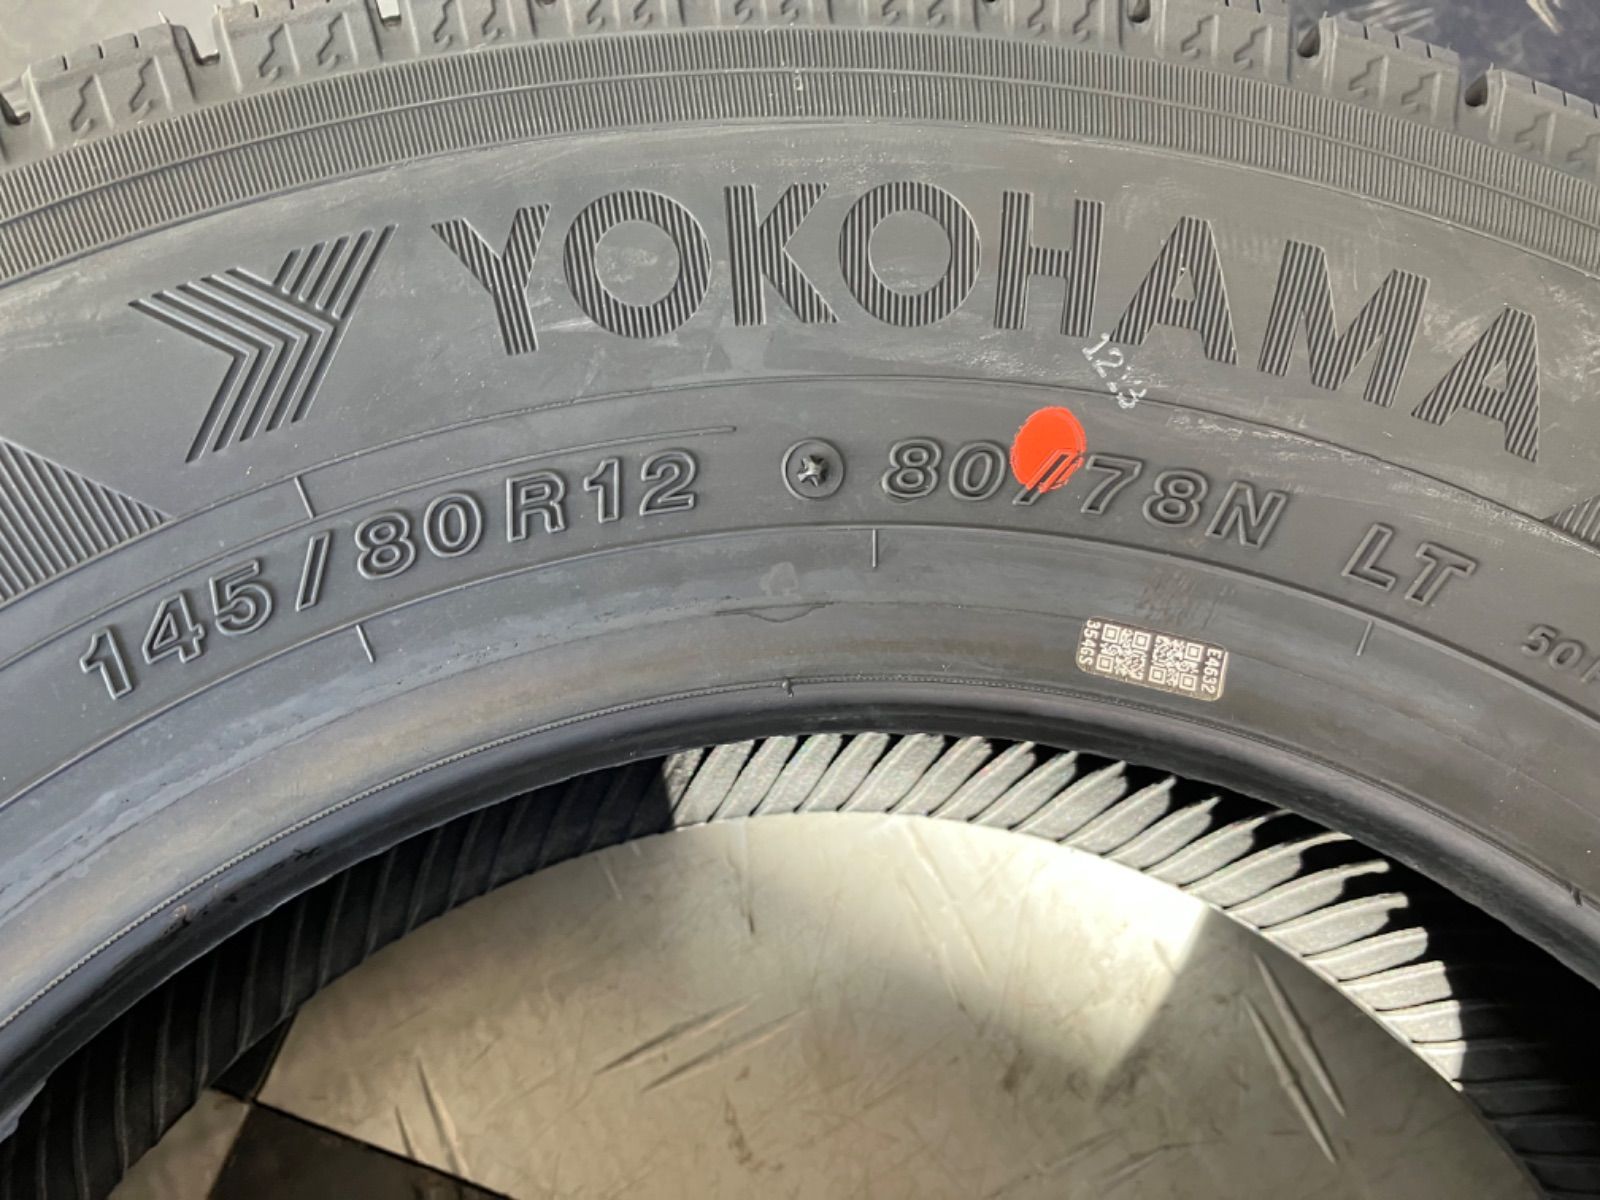 ［送料込み］YOKOHAMA ice GUARD iG91 ヨコハマ アイスガード i G91 145/80R12 80/78N LT  新品スタッドレスタイヤ4本 軽バン、軽トラに。